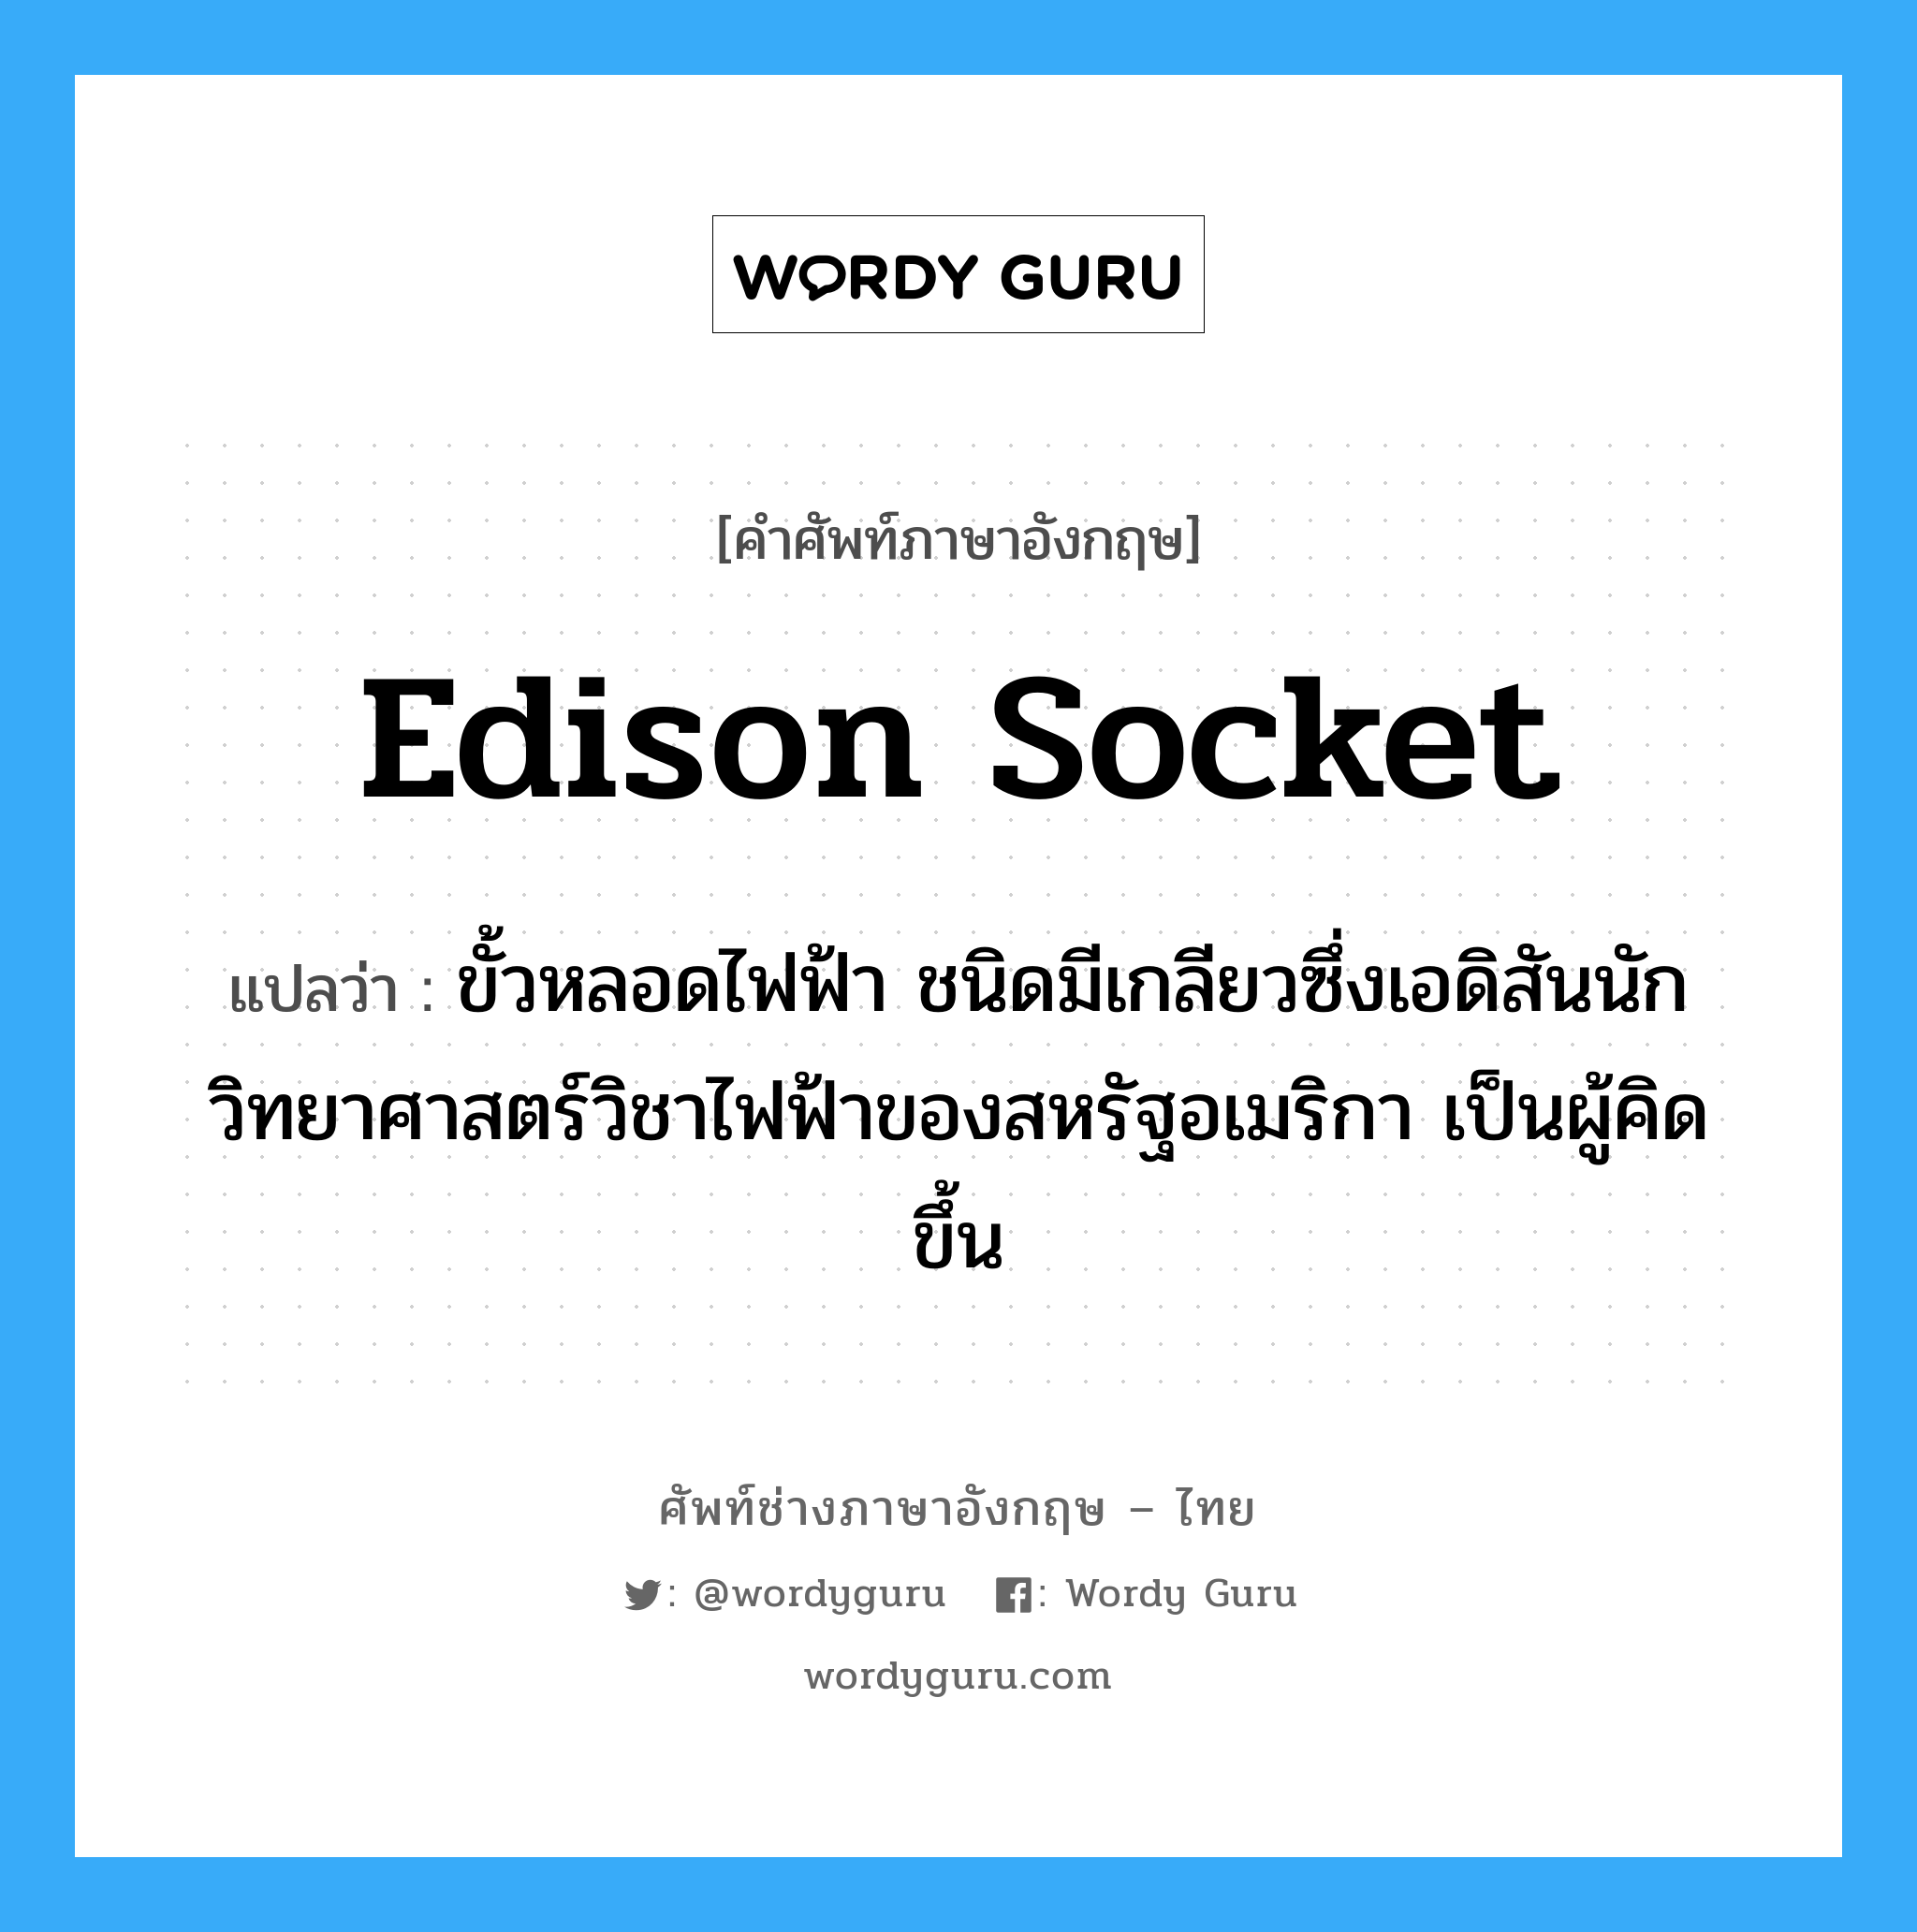 Edison socket แปลว่า?, คำศัพท์ช่างภาษาอังกฤษ - ไทย Edison socket คำศัพท์ภาษาอังกฤษ Edison socket แปลว่า ขั้วหลอดไฟฟ้า ชนิดมีเกลียวซึ่งเอดิสันนักวิทยาศาสตร์วิชาไฟฟ้าของสหรัฐอเมริกา เป็นผู้คิดขึ้น